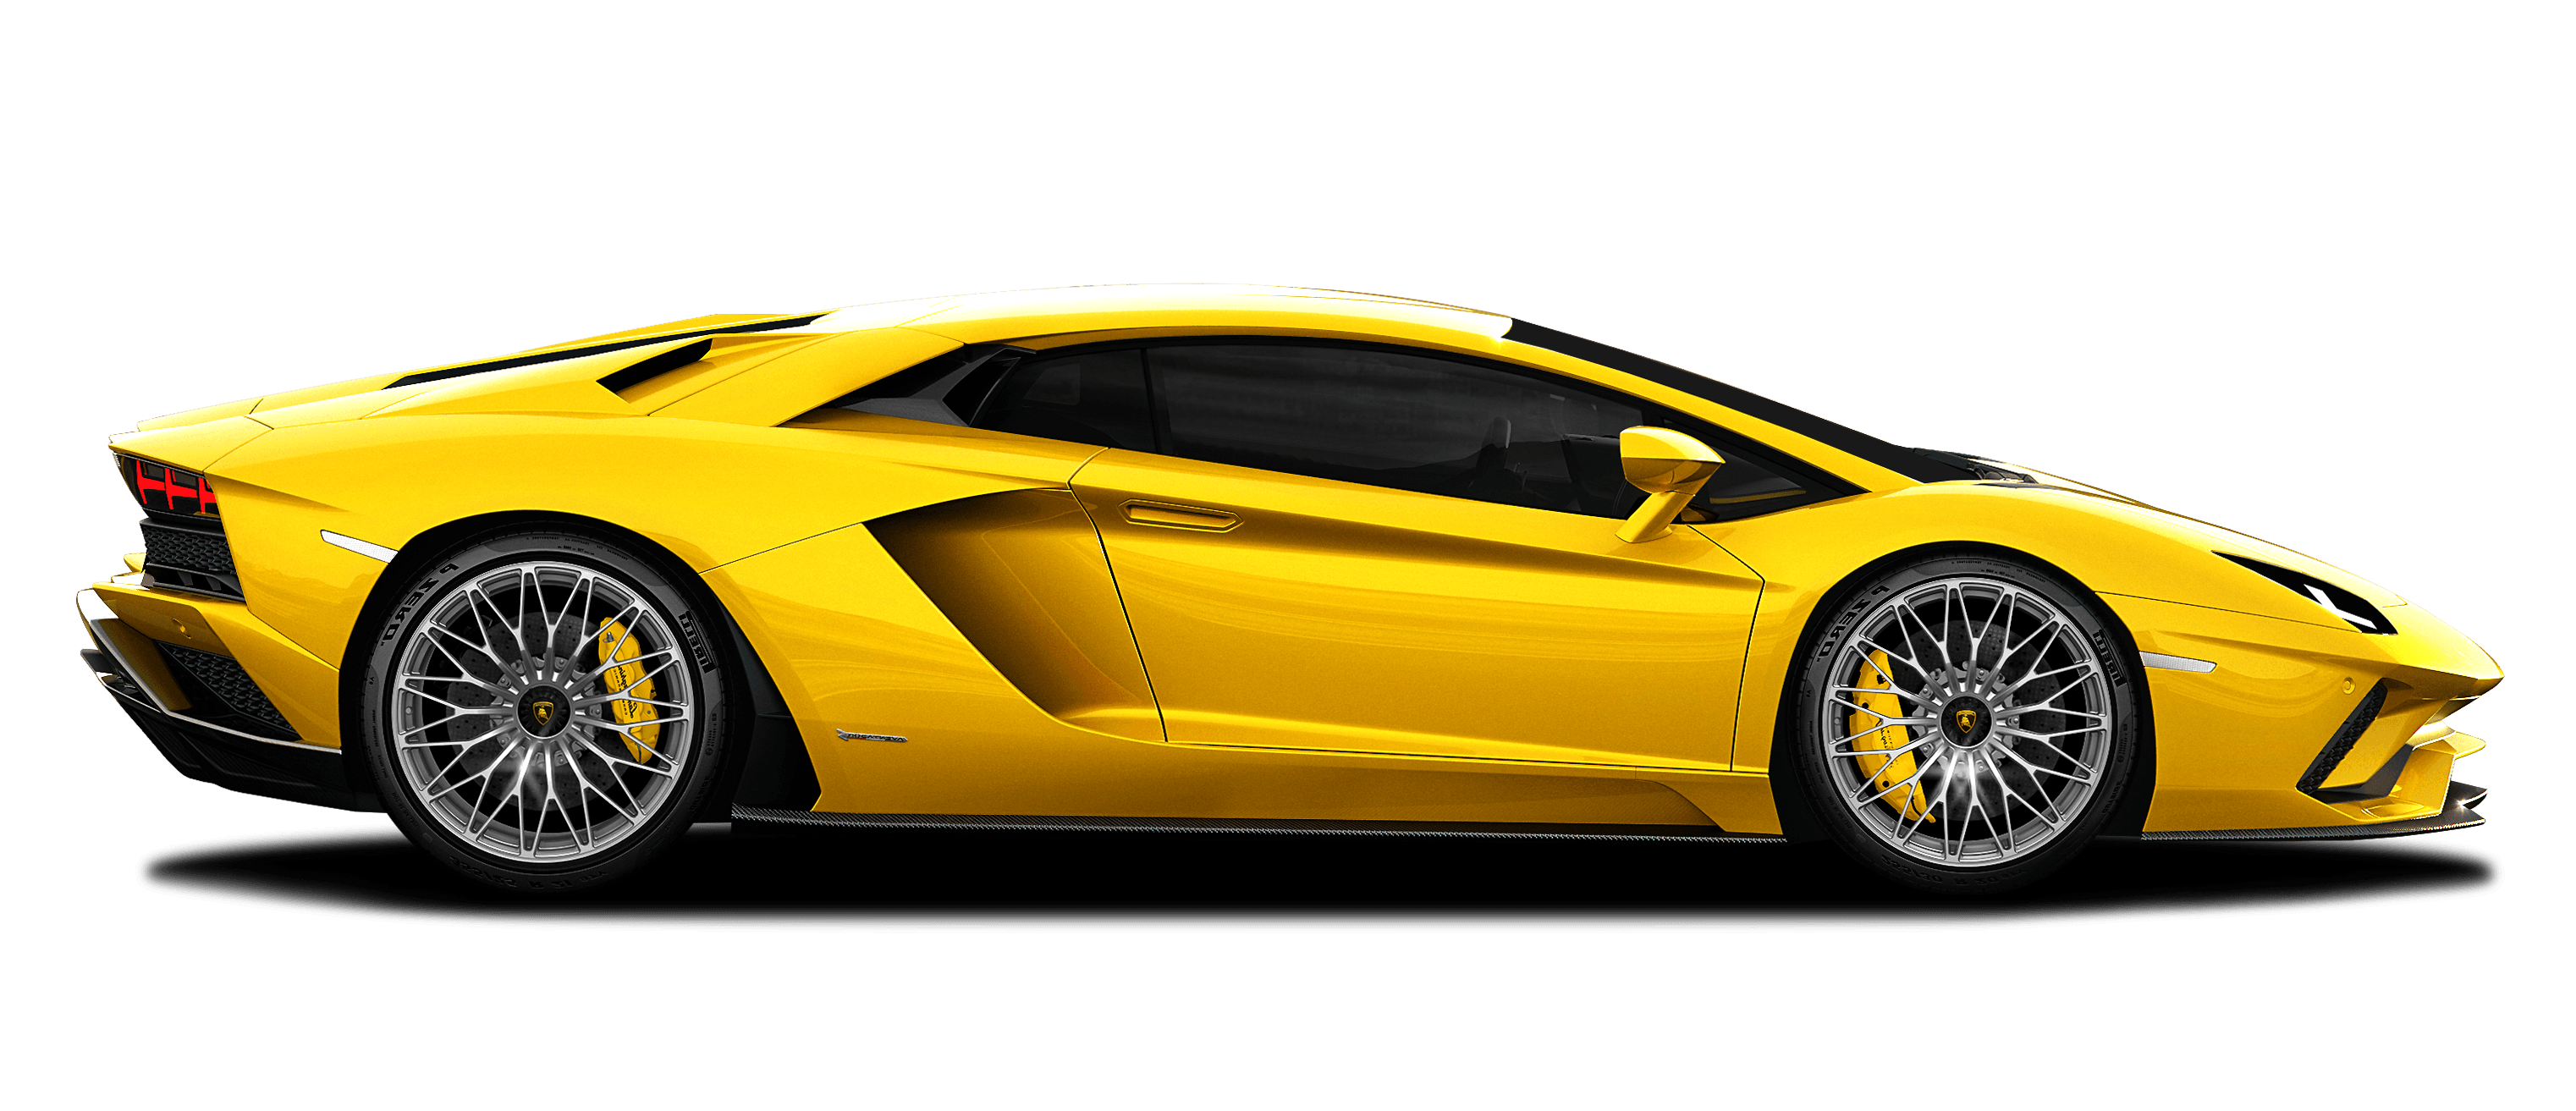 Lamborghini PNG Background Isolated Image